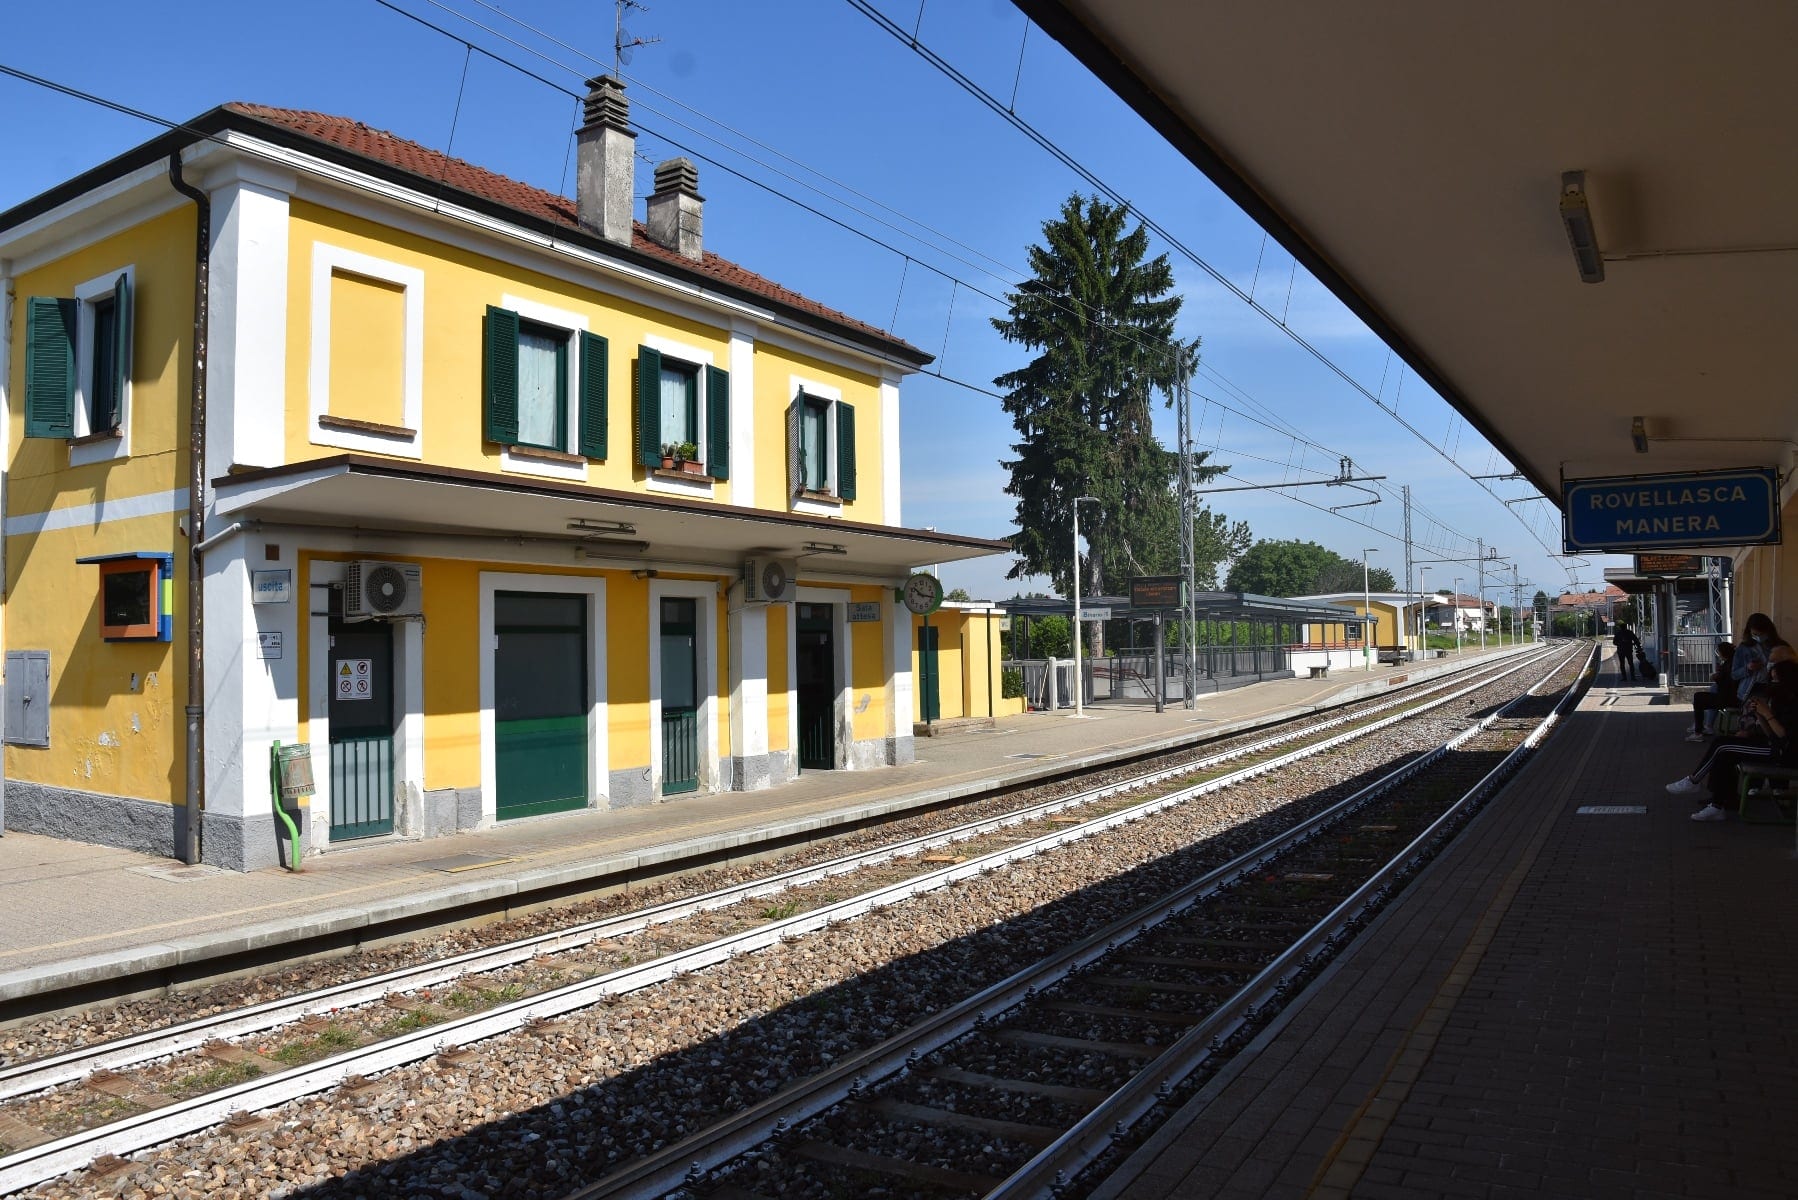 A Manera fra Rovellasca e Lomazzo oggi l’inaugurazione del sottopasso ferroviario